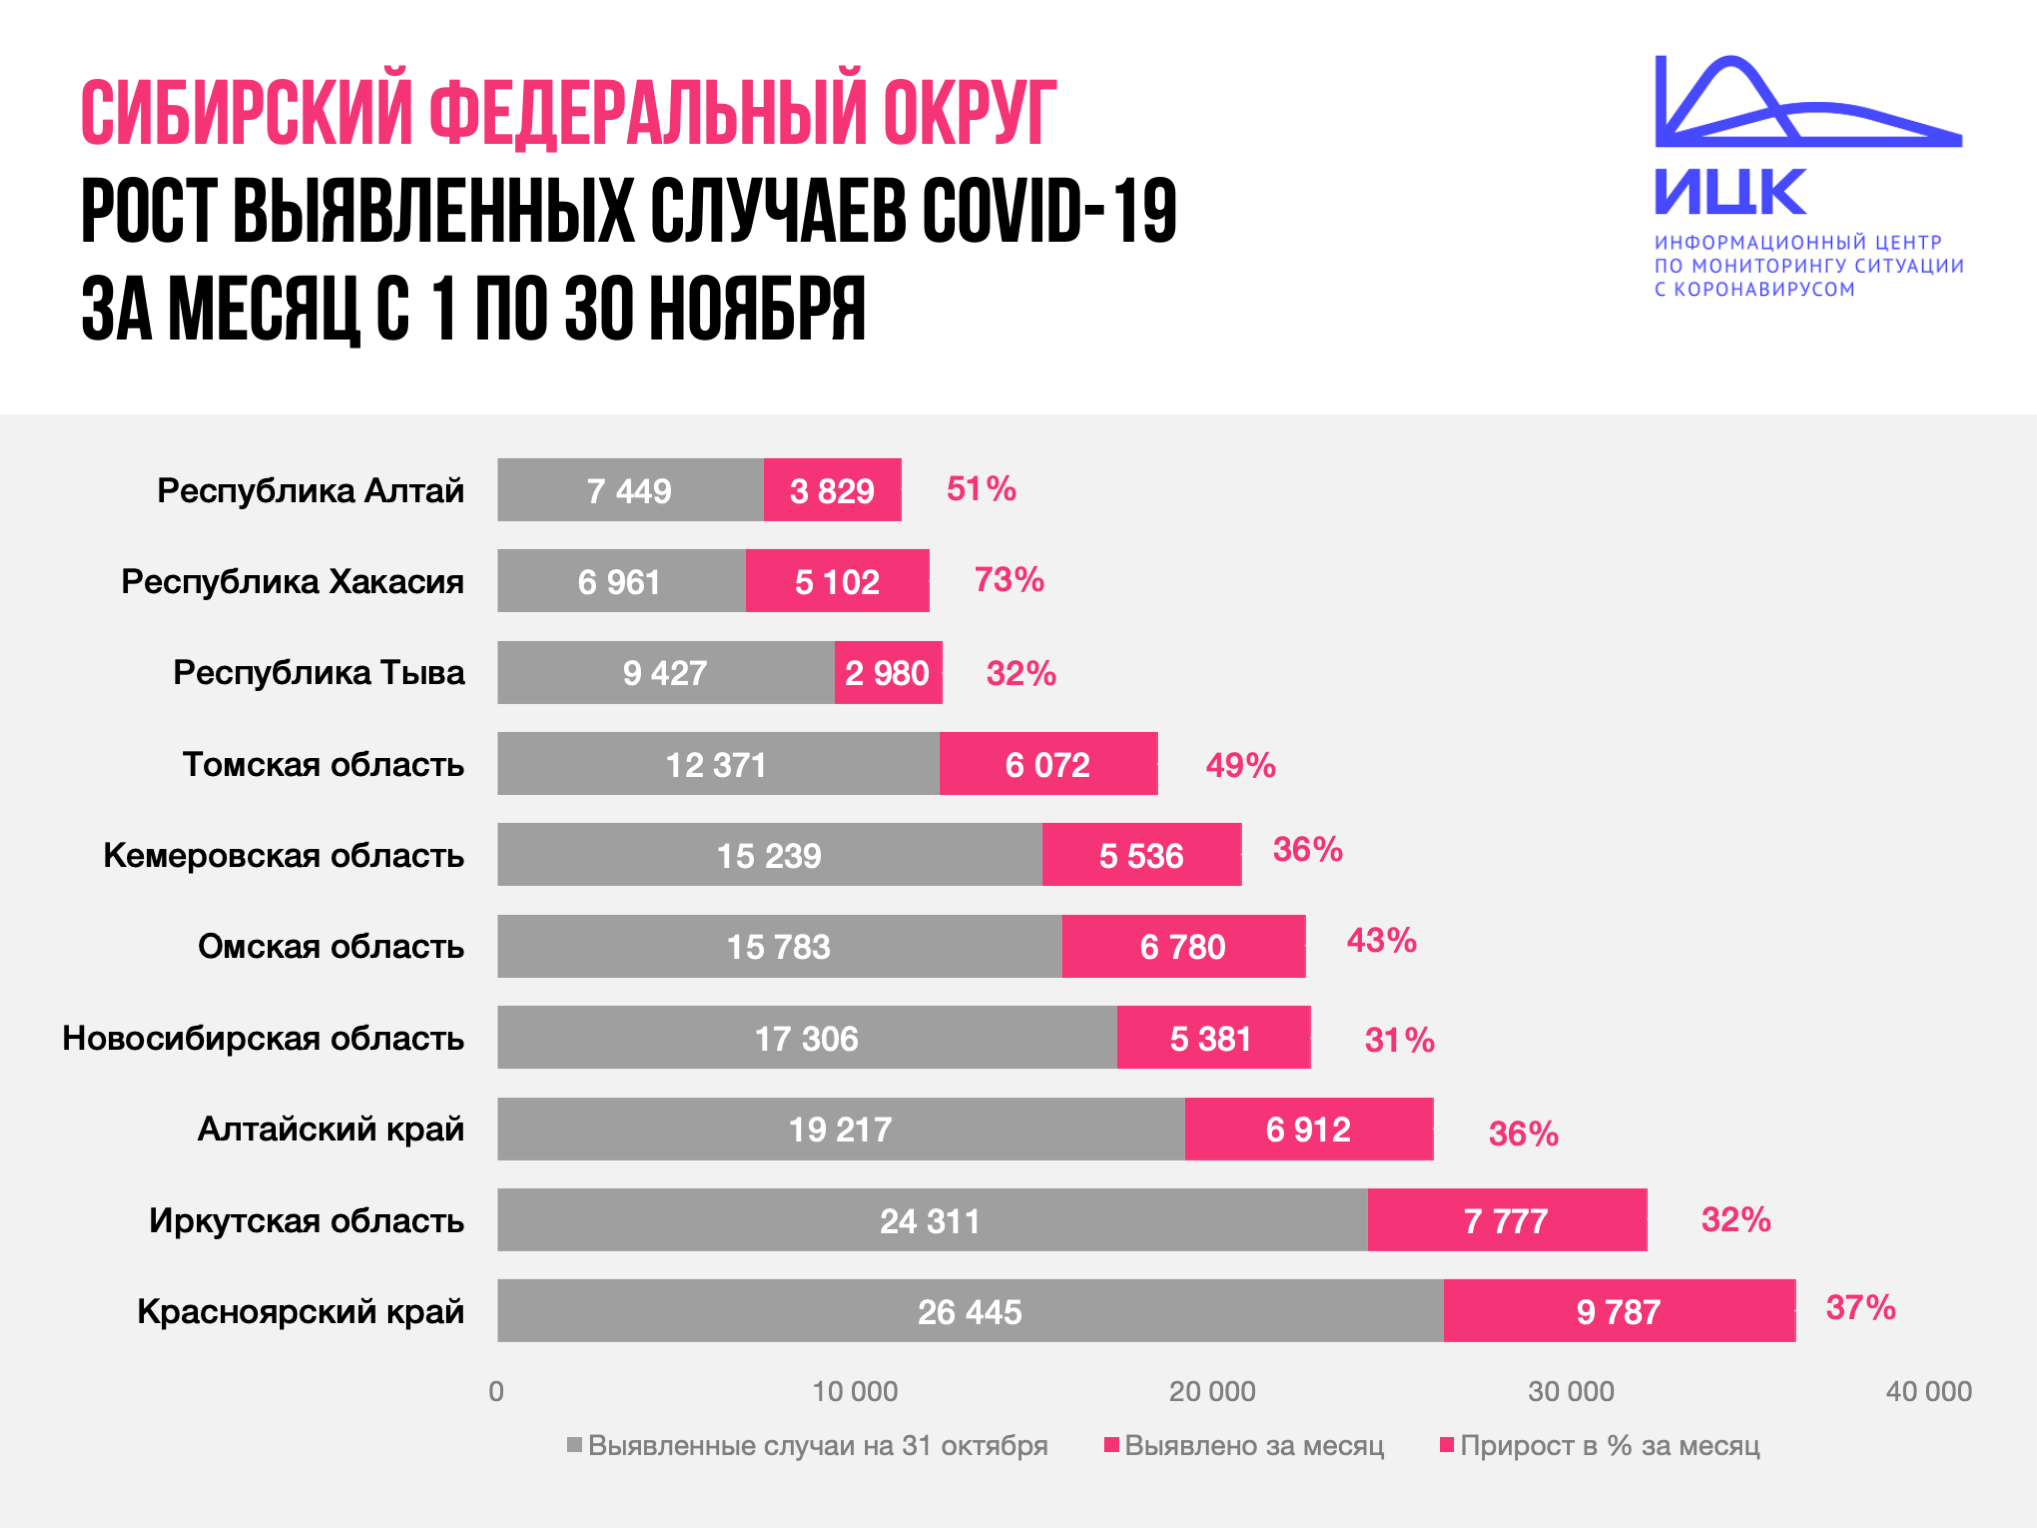 Хакасия возглавила «антирейтинг» сибирских регионов с самым большим процентом прироста заболевших COVID-19